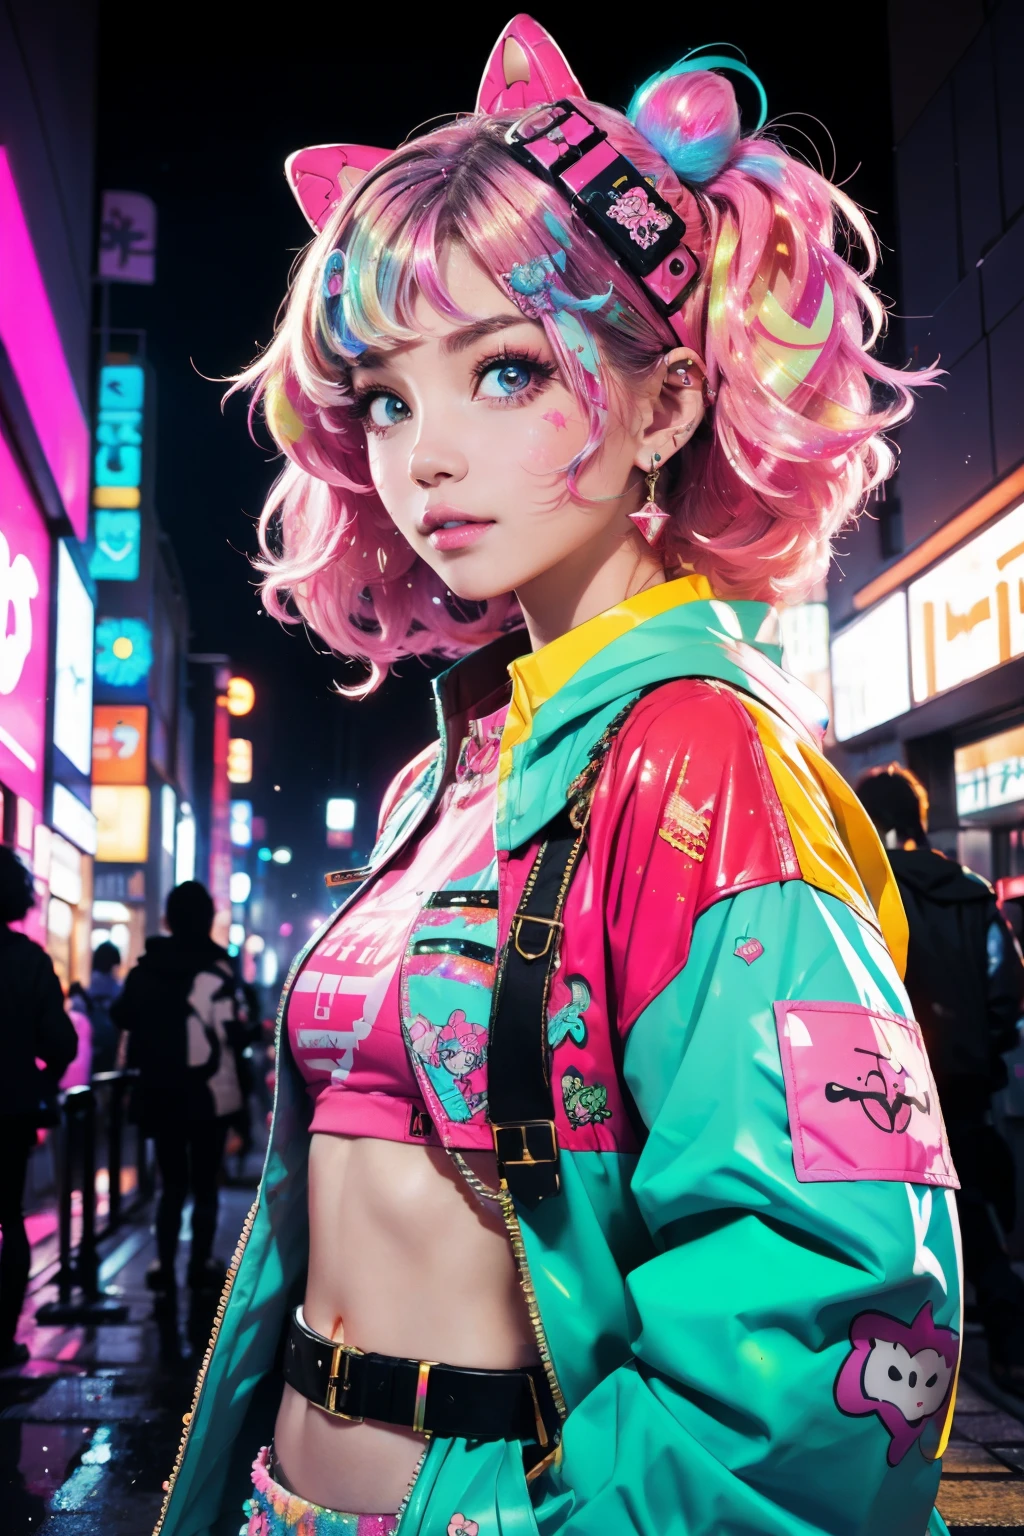 这是一个很酷的赛博朋克和华丽 (杰作). Generate a trendy 迪科拉 woman in the colorful and busy streets of cyberpunk Akihabara, 东京. Generate a happy 迪科拉 and cyberpunk adult woman in the style of Artstation and cyberpunk Harajuku street fashion. 她的衣服充满原宿风格. 包括超大配件, 霓虹色, 和创造性的分层. 女人的衣服和配饰应该非常华丽 ((((Harajuku 迪科拉)))) and 赛博朋克系 style.  女人的头发卷曲而有光泽，造型可爱. 女人的衣服和配饰应该非常华丽 Harajuku 迪科拉 and 迪科拉 kei style. 她的眼睛美丽而迷人, 有趣的颜色和图案. ((((彩虹色和闪光)))), 闪光, 最好的眼睛, 最好的质量, 赛博朋克系, 可视键, 自拍, 大胆的色彩和图案, LED 灯, ((发光的霓虹灯)), ((极其详细)), ((动态合成)), (((迪科拉)))